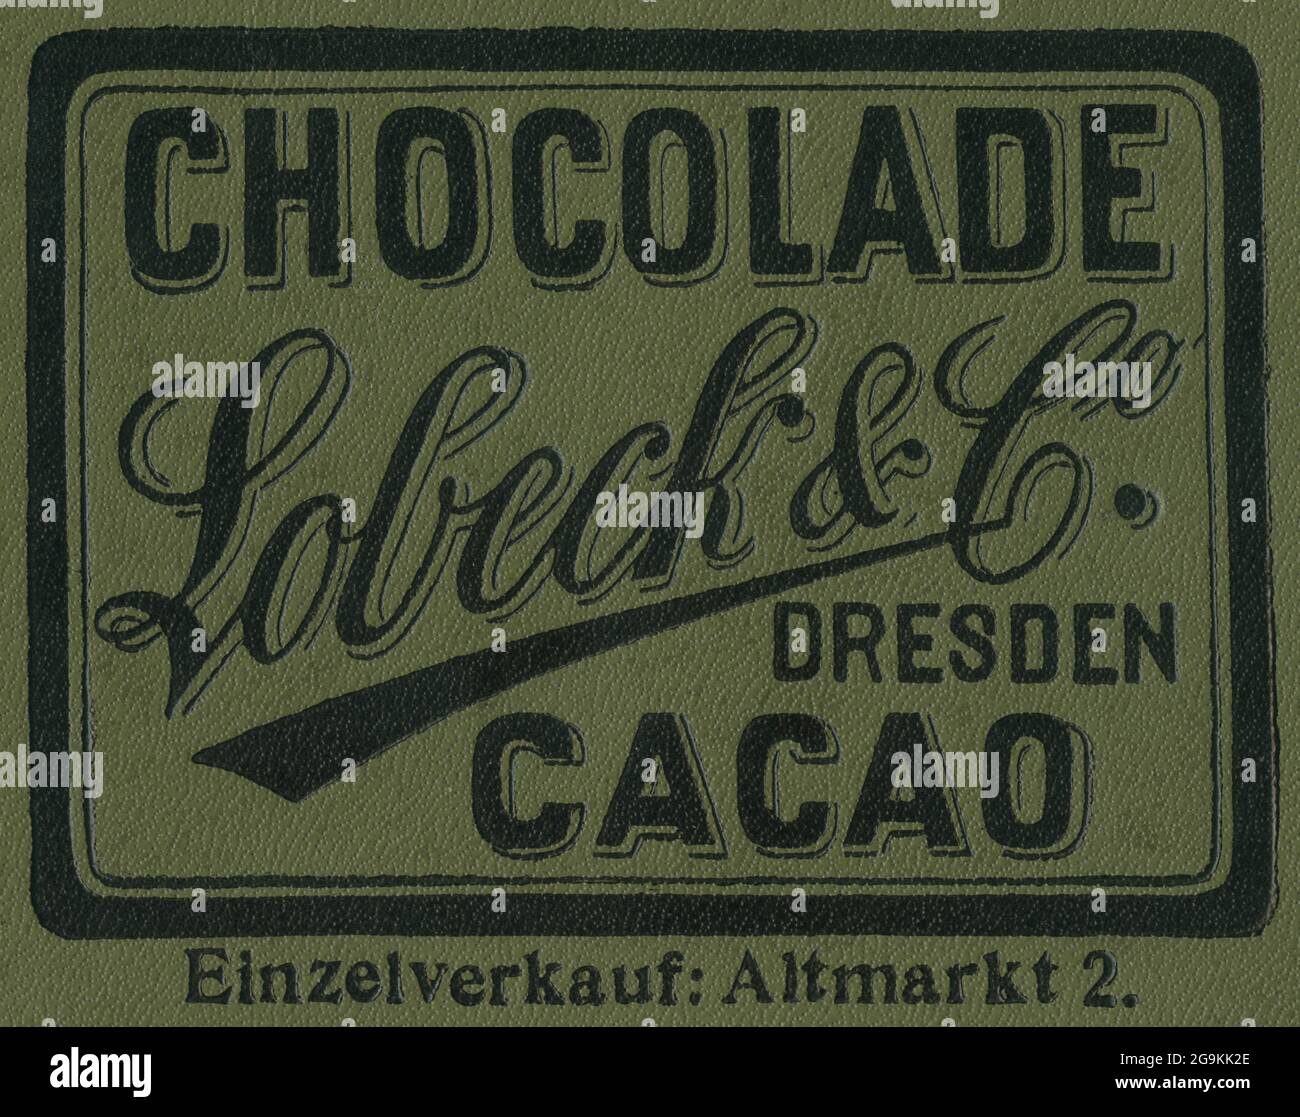 Europe, Allemagne, Saxe, Dresde, publicité pour ' chocolat Lobeck et Co cacao / Dresde', DROITS-SUPPLÉMENTAIRES-AUTORISATION-INFO-NON-DISPONIBLE Banque D'Images